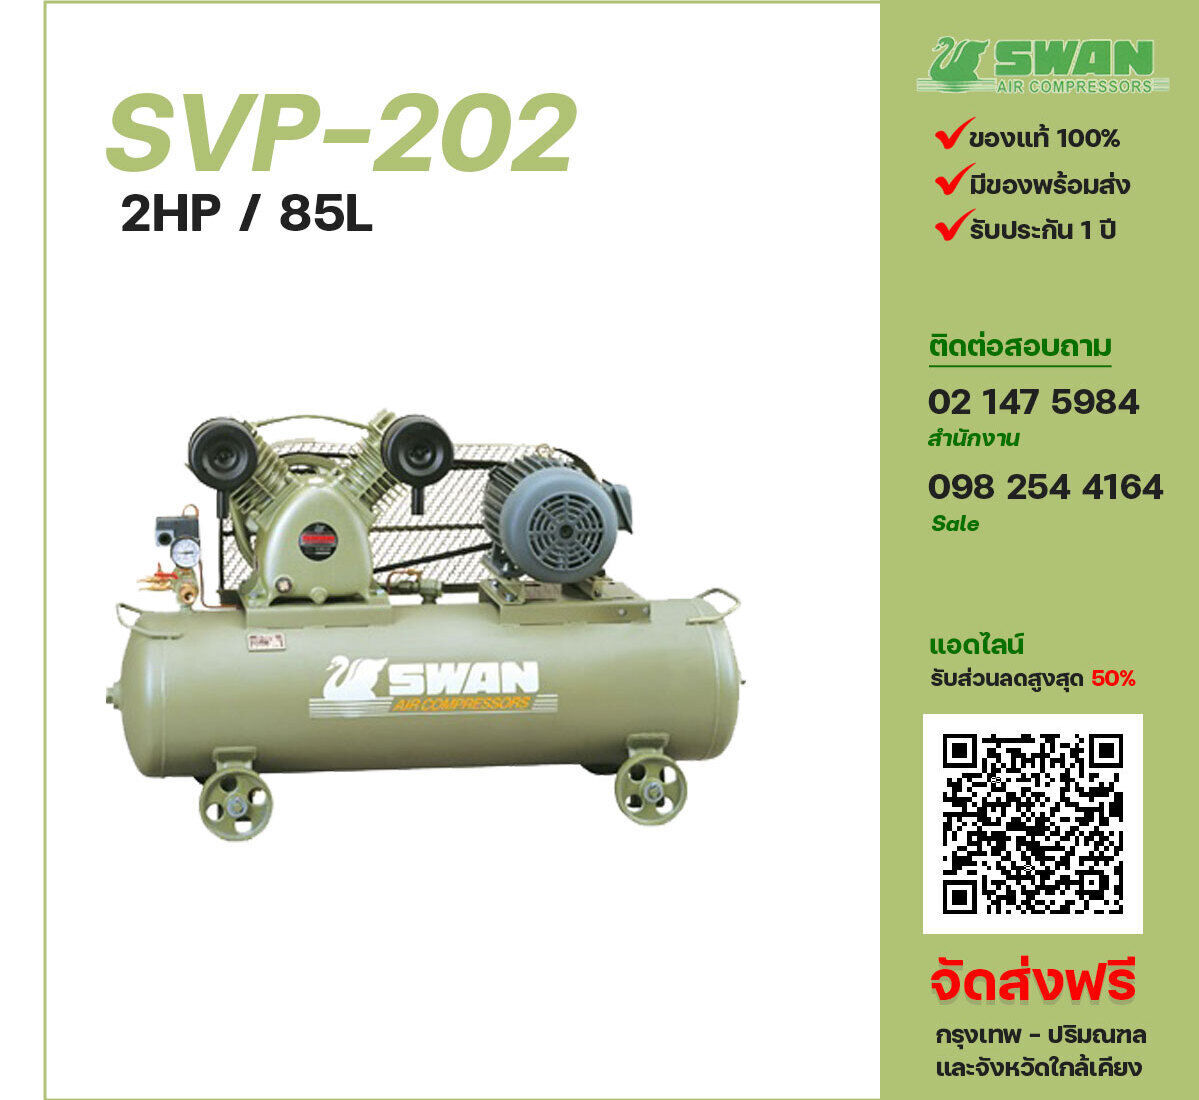 ปั๊มลมสวอน SWAN SVP-202 220V/380V ปั๊มลมลูกสูบ ขนาด 2 สูบ 2 แรงม้า 85 ลิตร SWAN พร้อมมอเตอร์ ไฟ 220V/380V ส่งฟรี กรุงเทพฯ-ปริมณฑล รับประกัน 1 ปี
